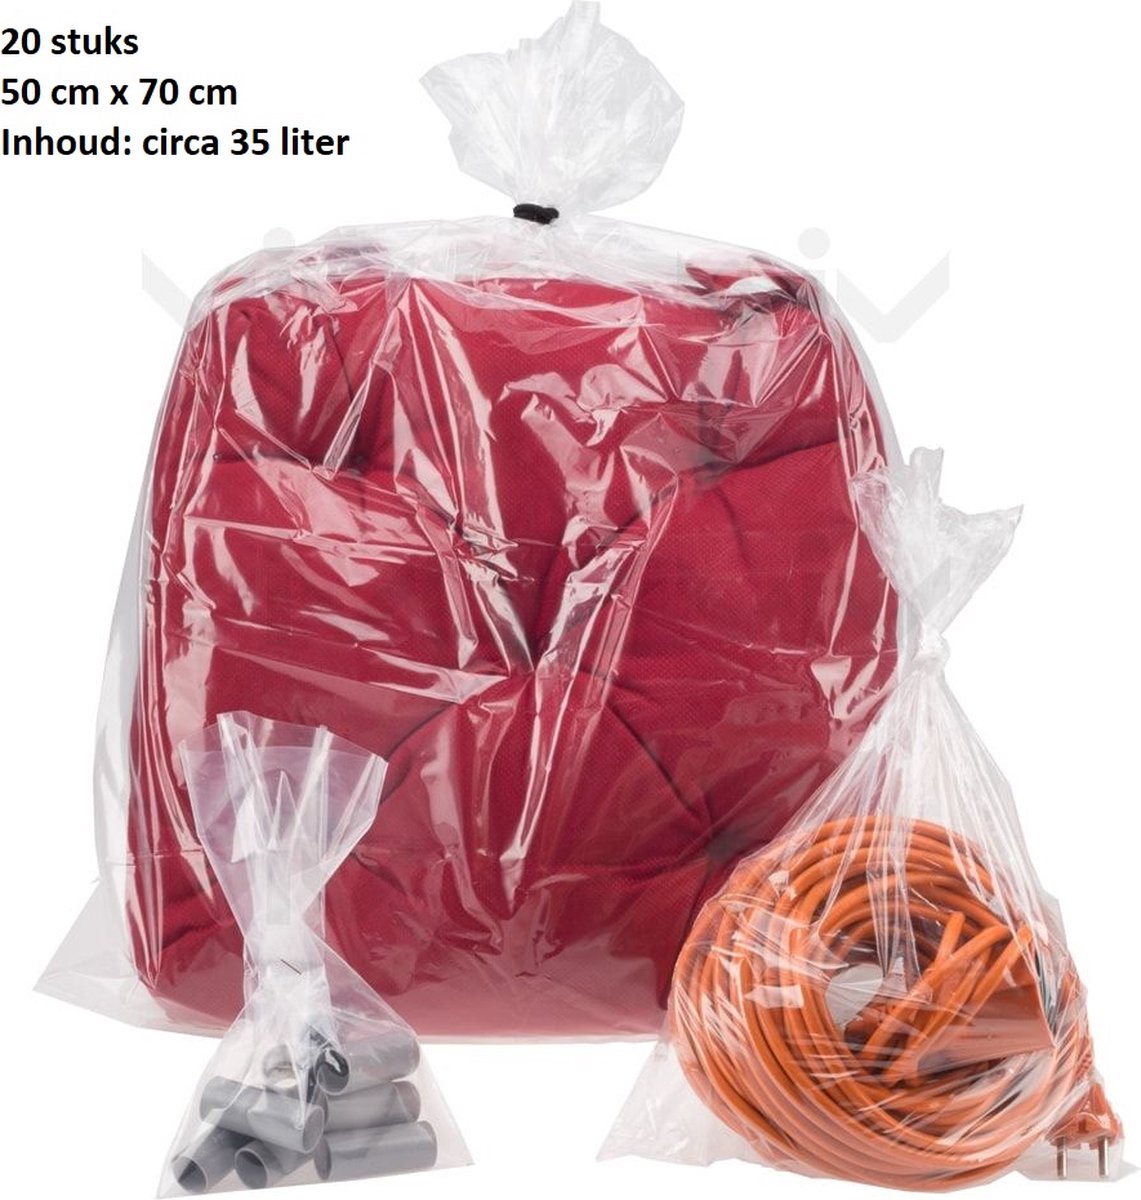 Plastic zakken groot 20 stuks 50cm x 70cm LDPE zakken polyzakken vlak transparant 50x70 - 500x700mm - Vlakke zakken - Bomba